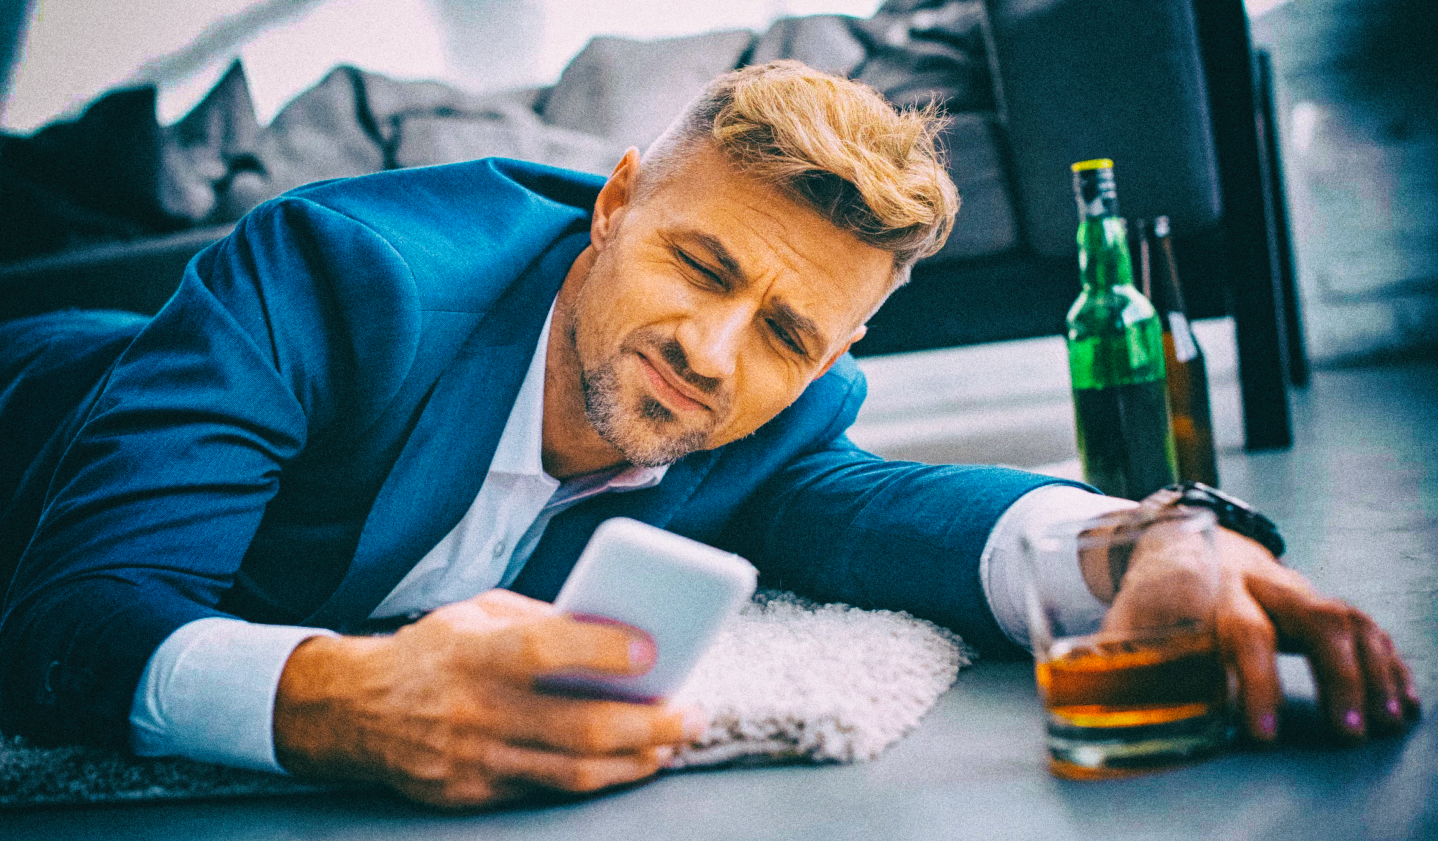 Датчики смартфона могут распознавать алкогольное опьянение